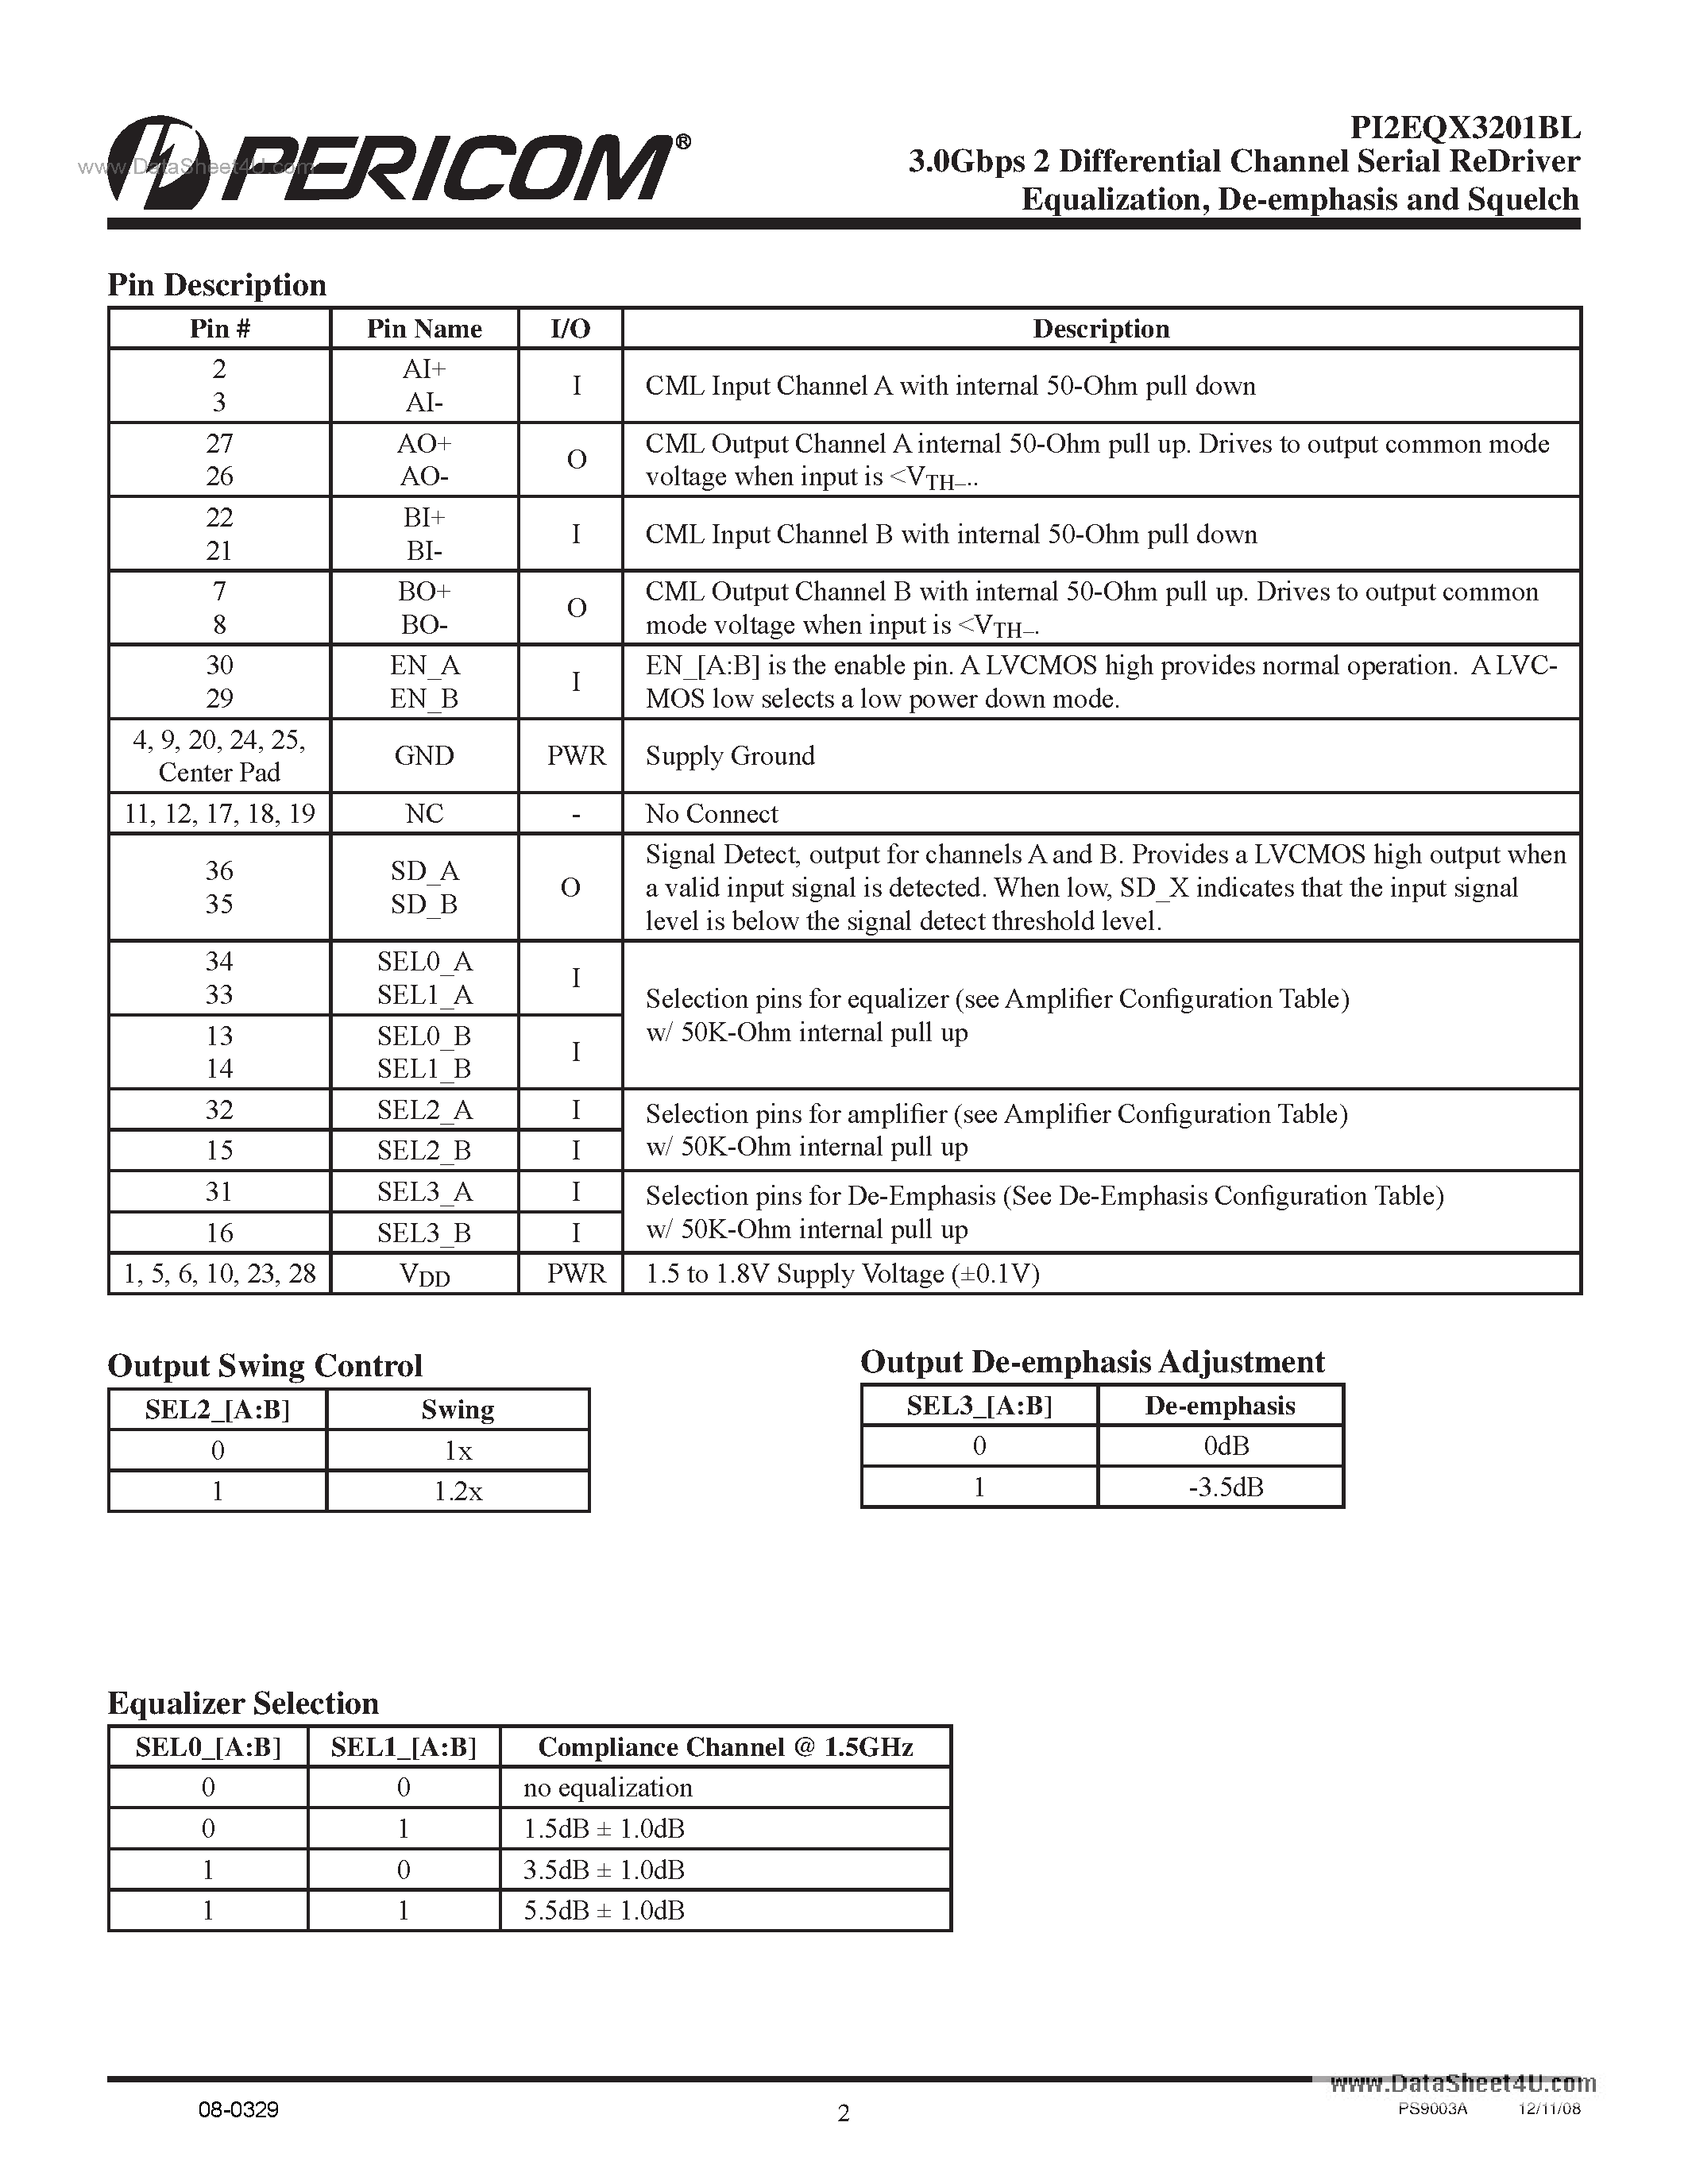 Datasheet PI2EQX3201BL - 1-port SATA2 I/m ReDriver page 2